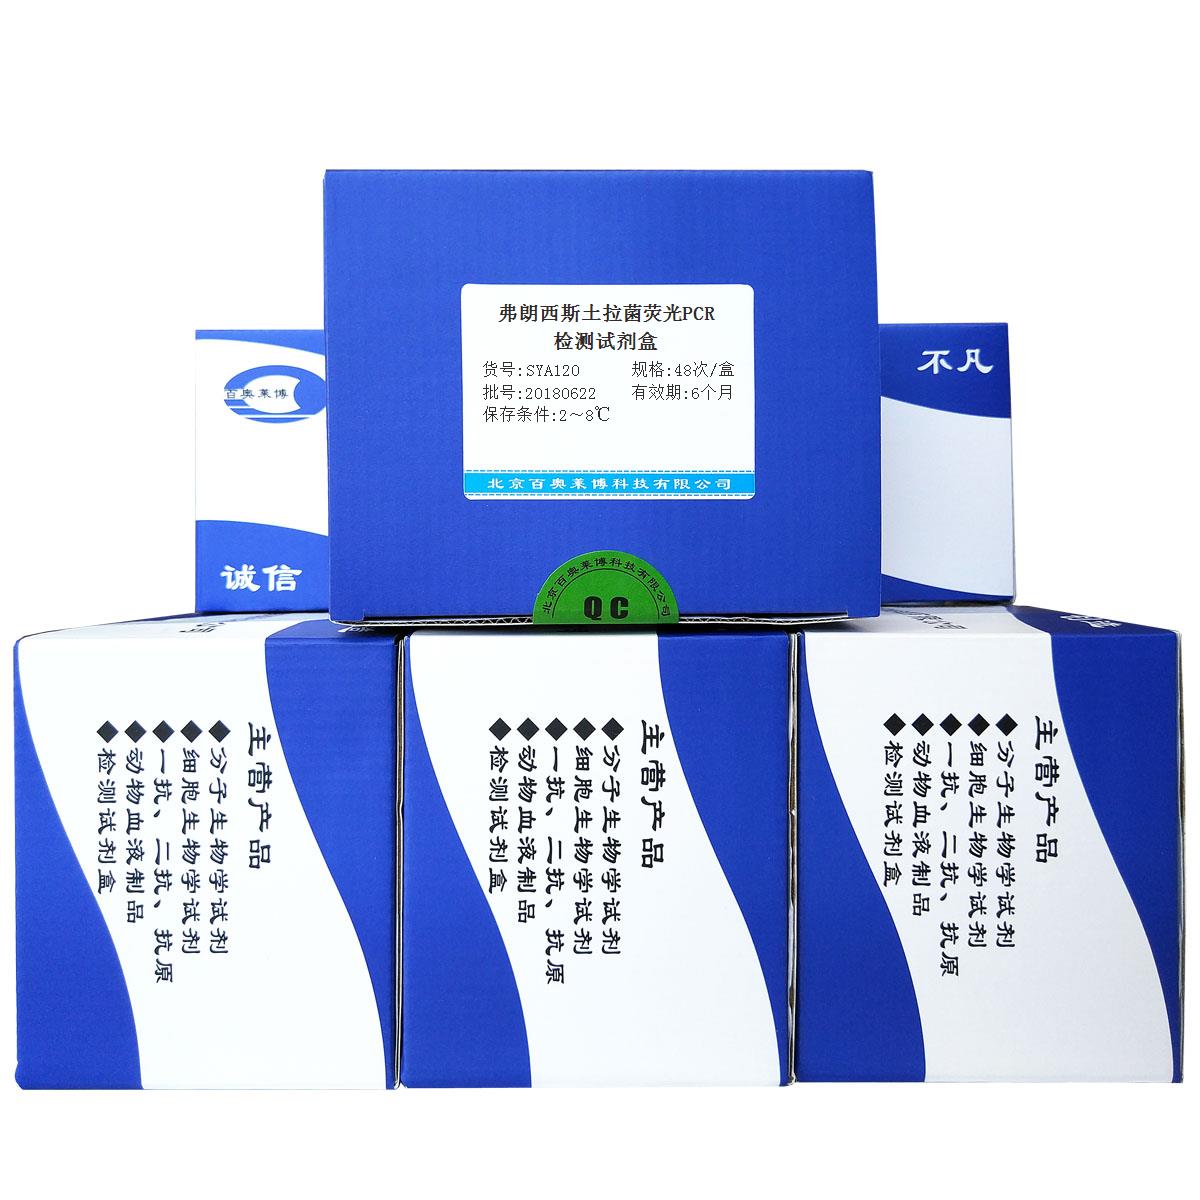 北京现货弗朗西斯土拉菌荧光PCR检测试剂盒(国产,进口)